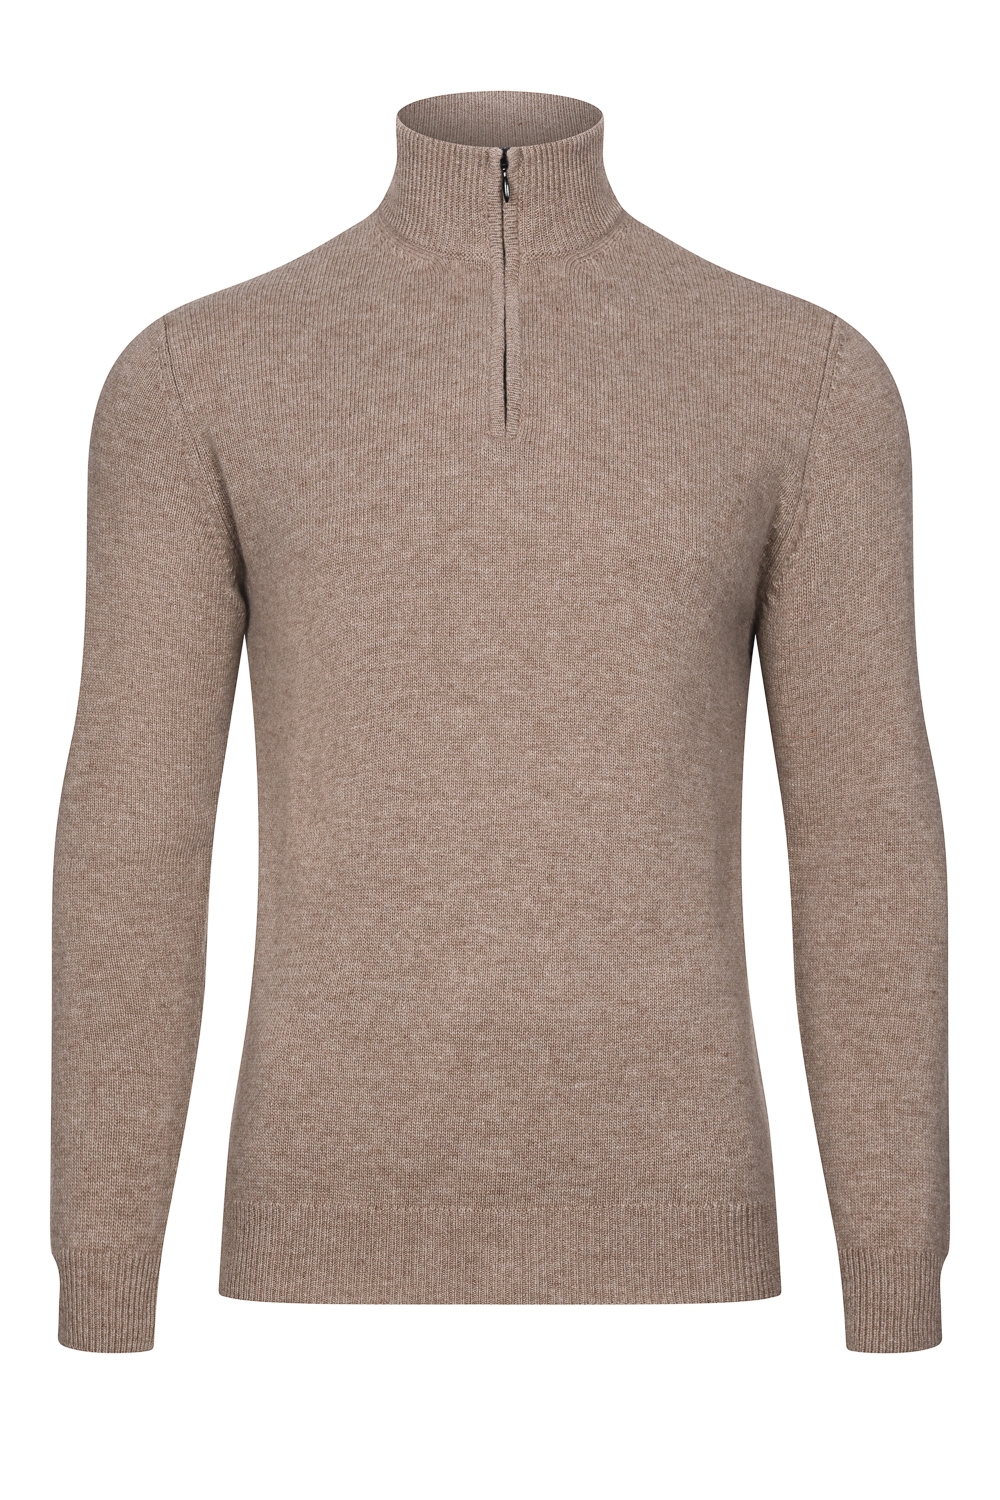 Image of brązowy sweter z wełny merynos z suwakiem 7xl